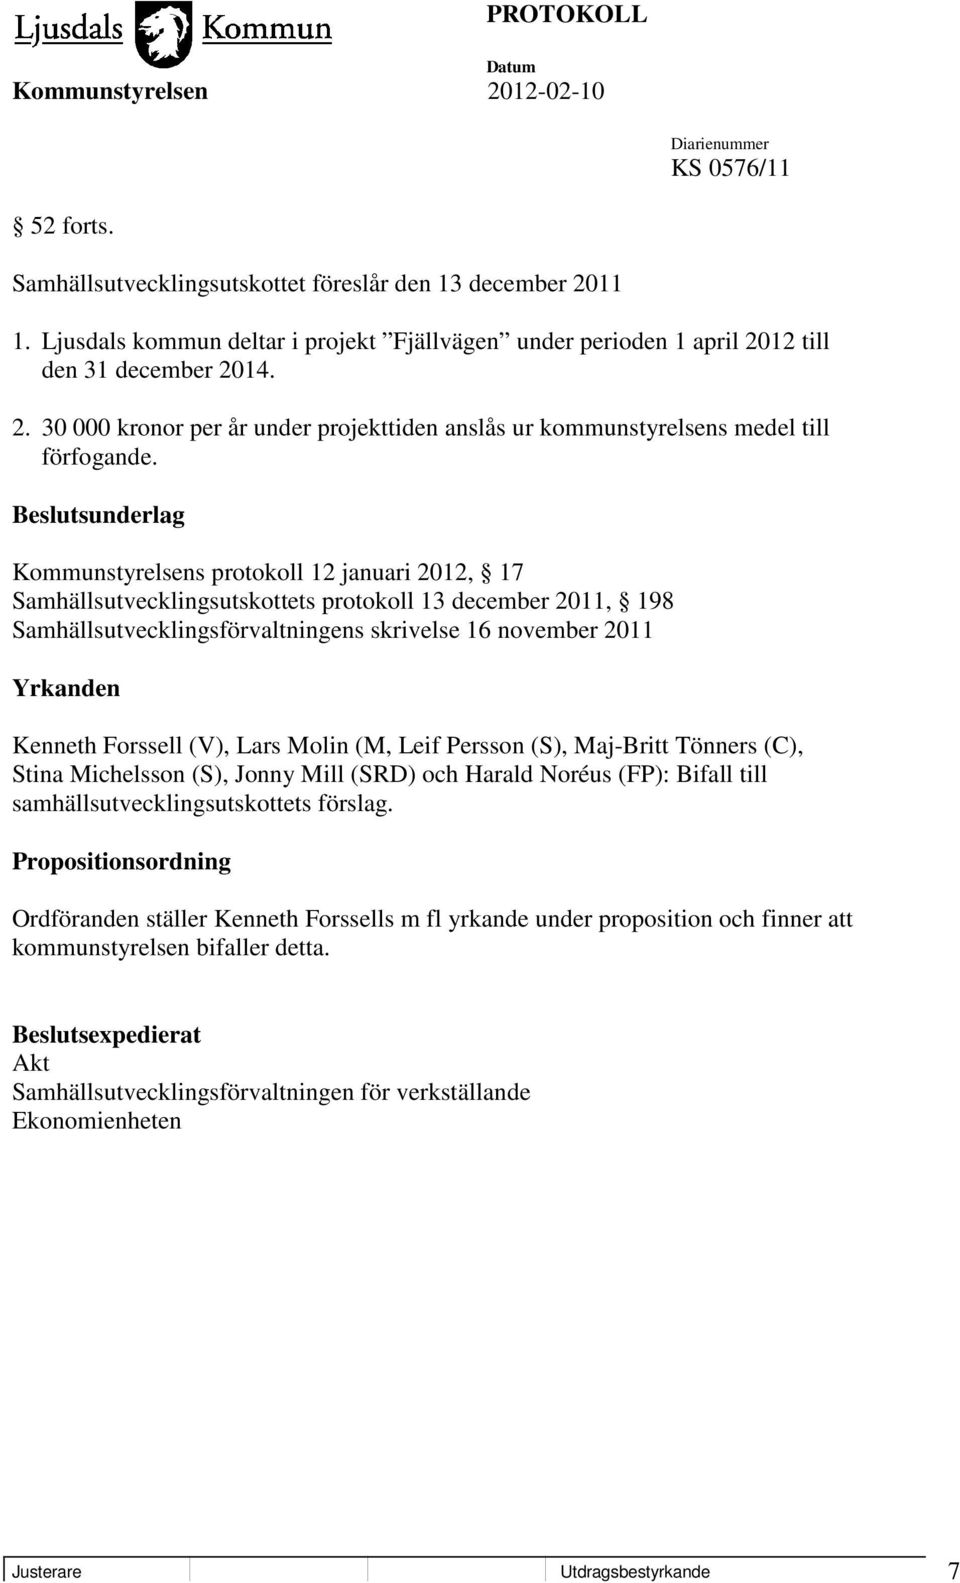 Kenneth Forssell (V), Lars Molin (M, Leif Persson (S), Maj-Britt Tönners (C), Stina Michelsson (S), Jonny Mill (SRD) och Harald Noréus (FP): Bifall till samhällsutvecklingsutskottets förslag.